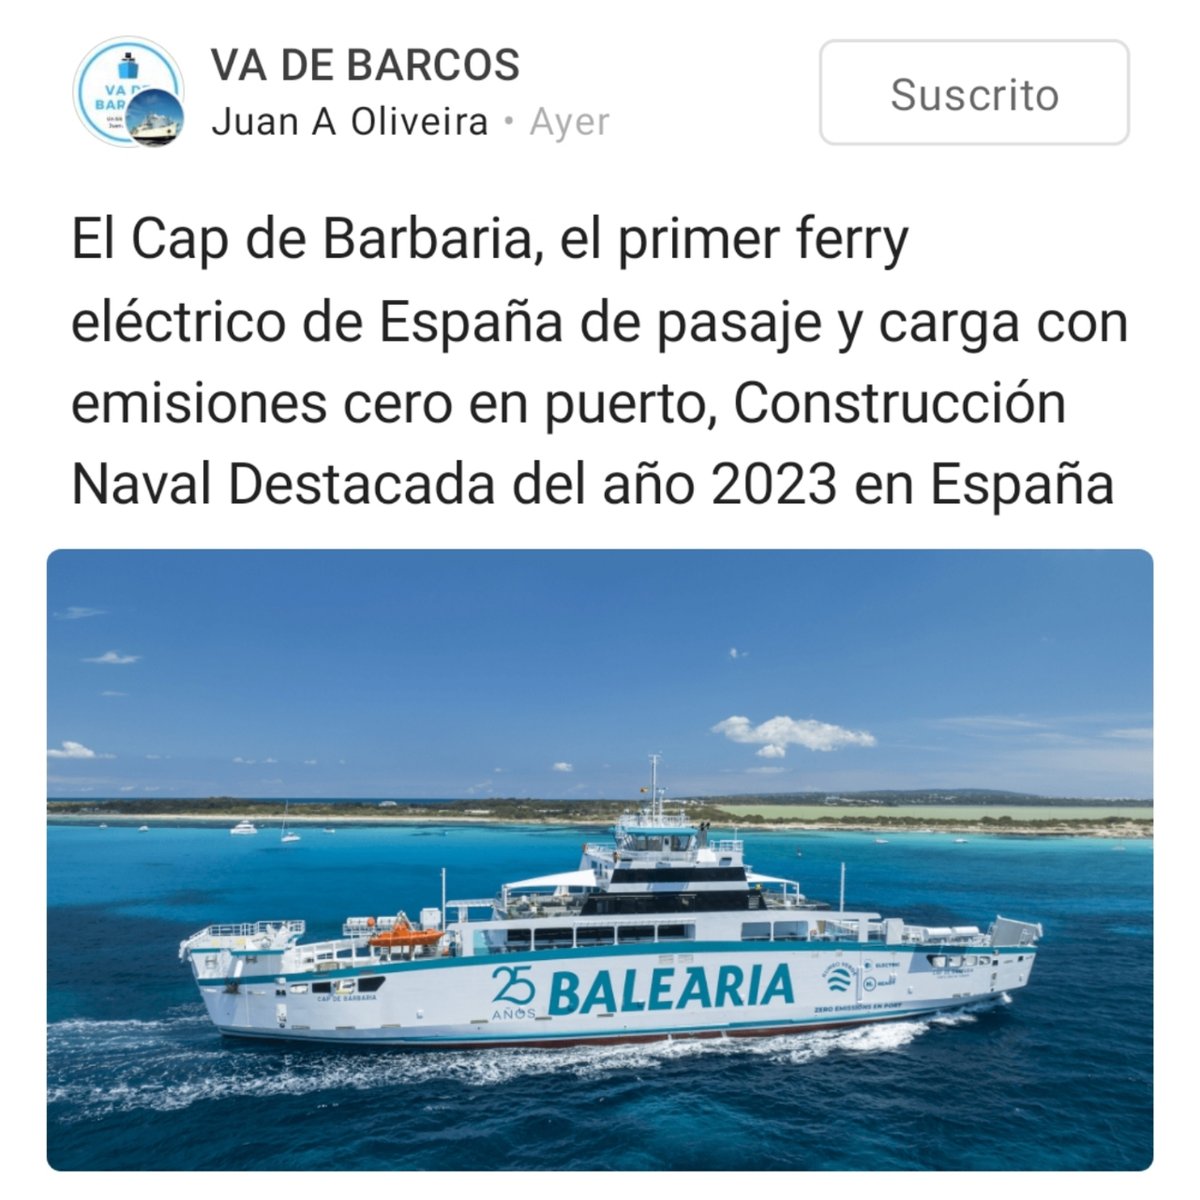 📢 Esta semana en @vadebarcos: 👉 El #CapDeBarbaria de @Balearia, primer ferry eléctrico de España de pasaje y carga con 'cero emisiones' en puerto, construido por #AstillerosArmon en #Vigo, elegido Construcción Naval Destacada del año 2023 en España i.mtr.cool/oslbktwhnv